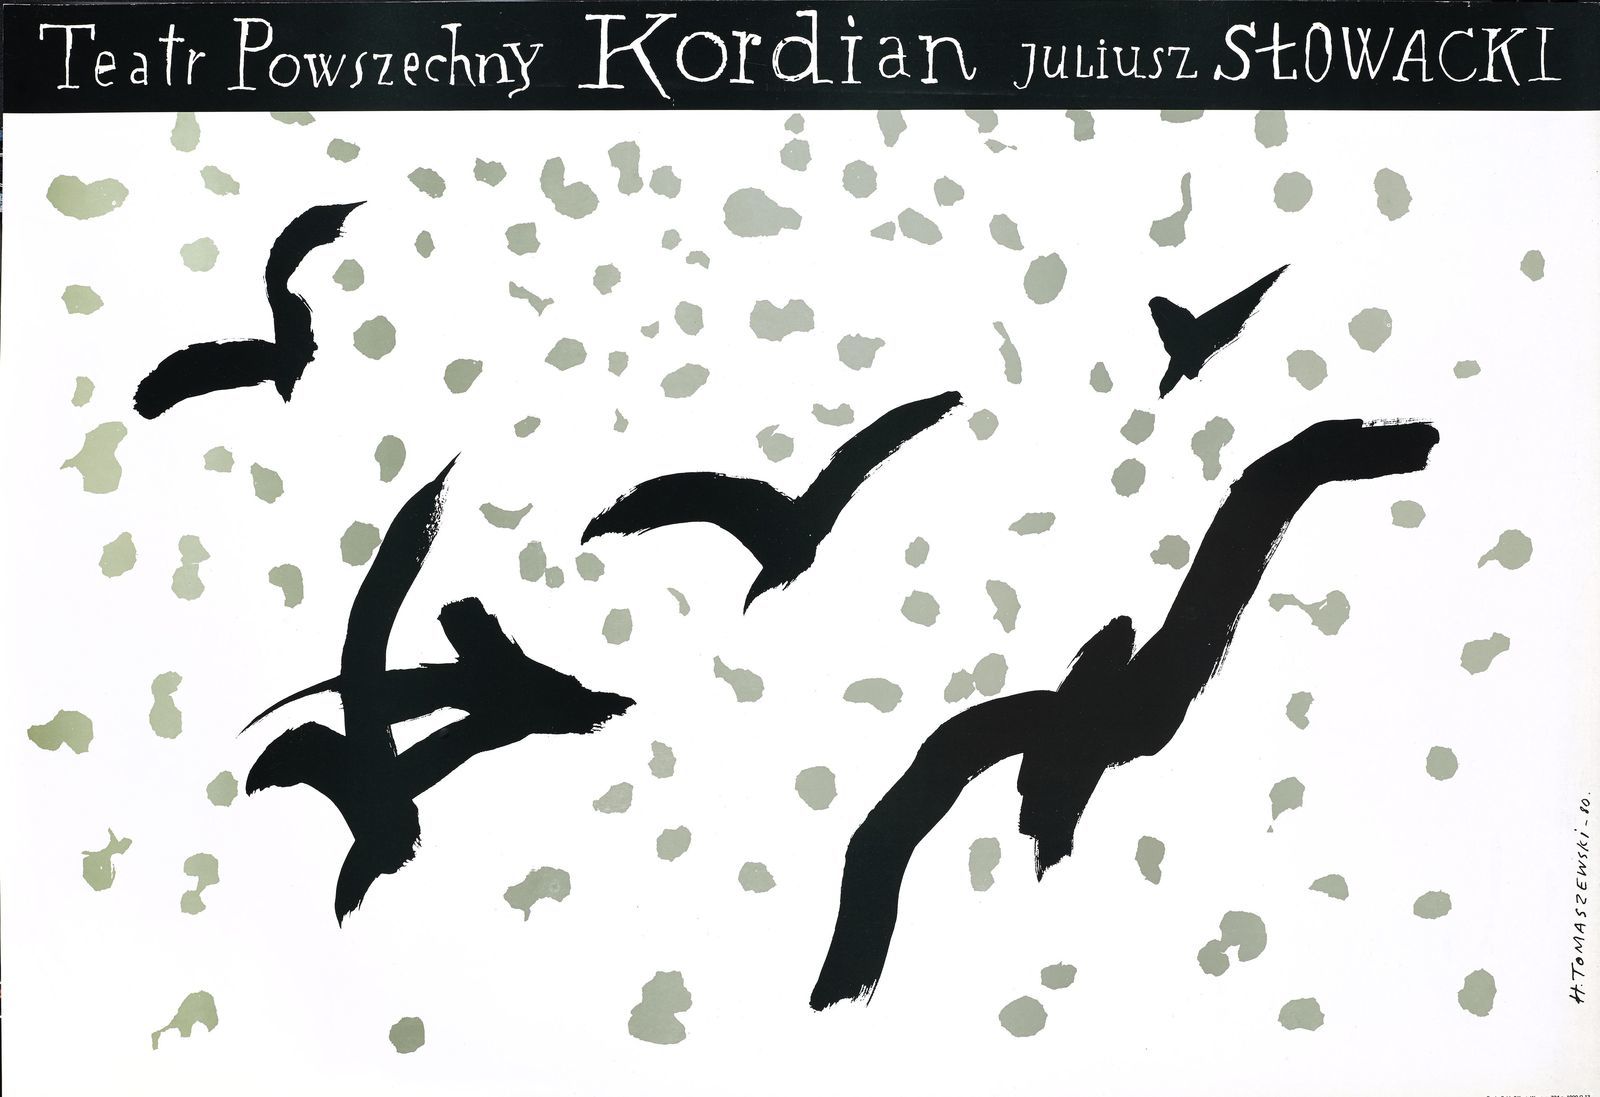 Henryk Tomaszewski, "Kordian", plakat teatralny 1980, dzięki uprzejmości Filipa Pągowskiego